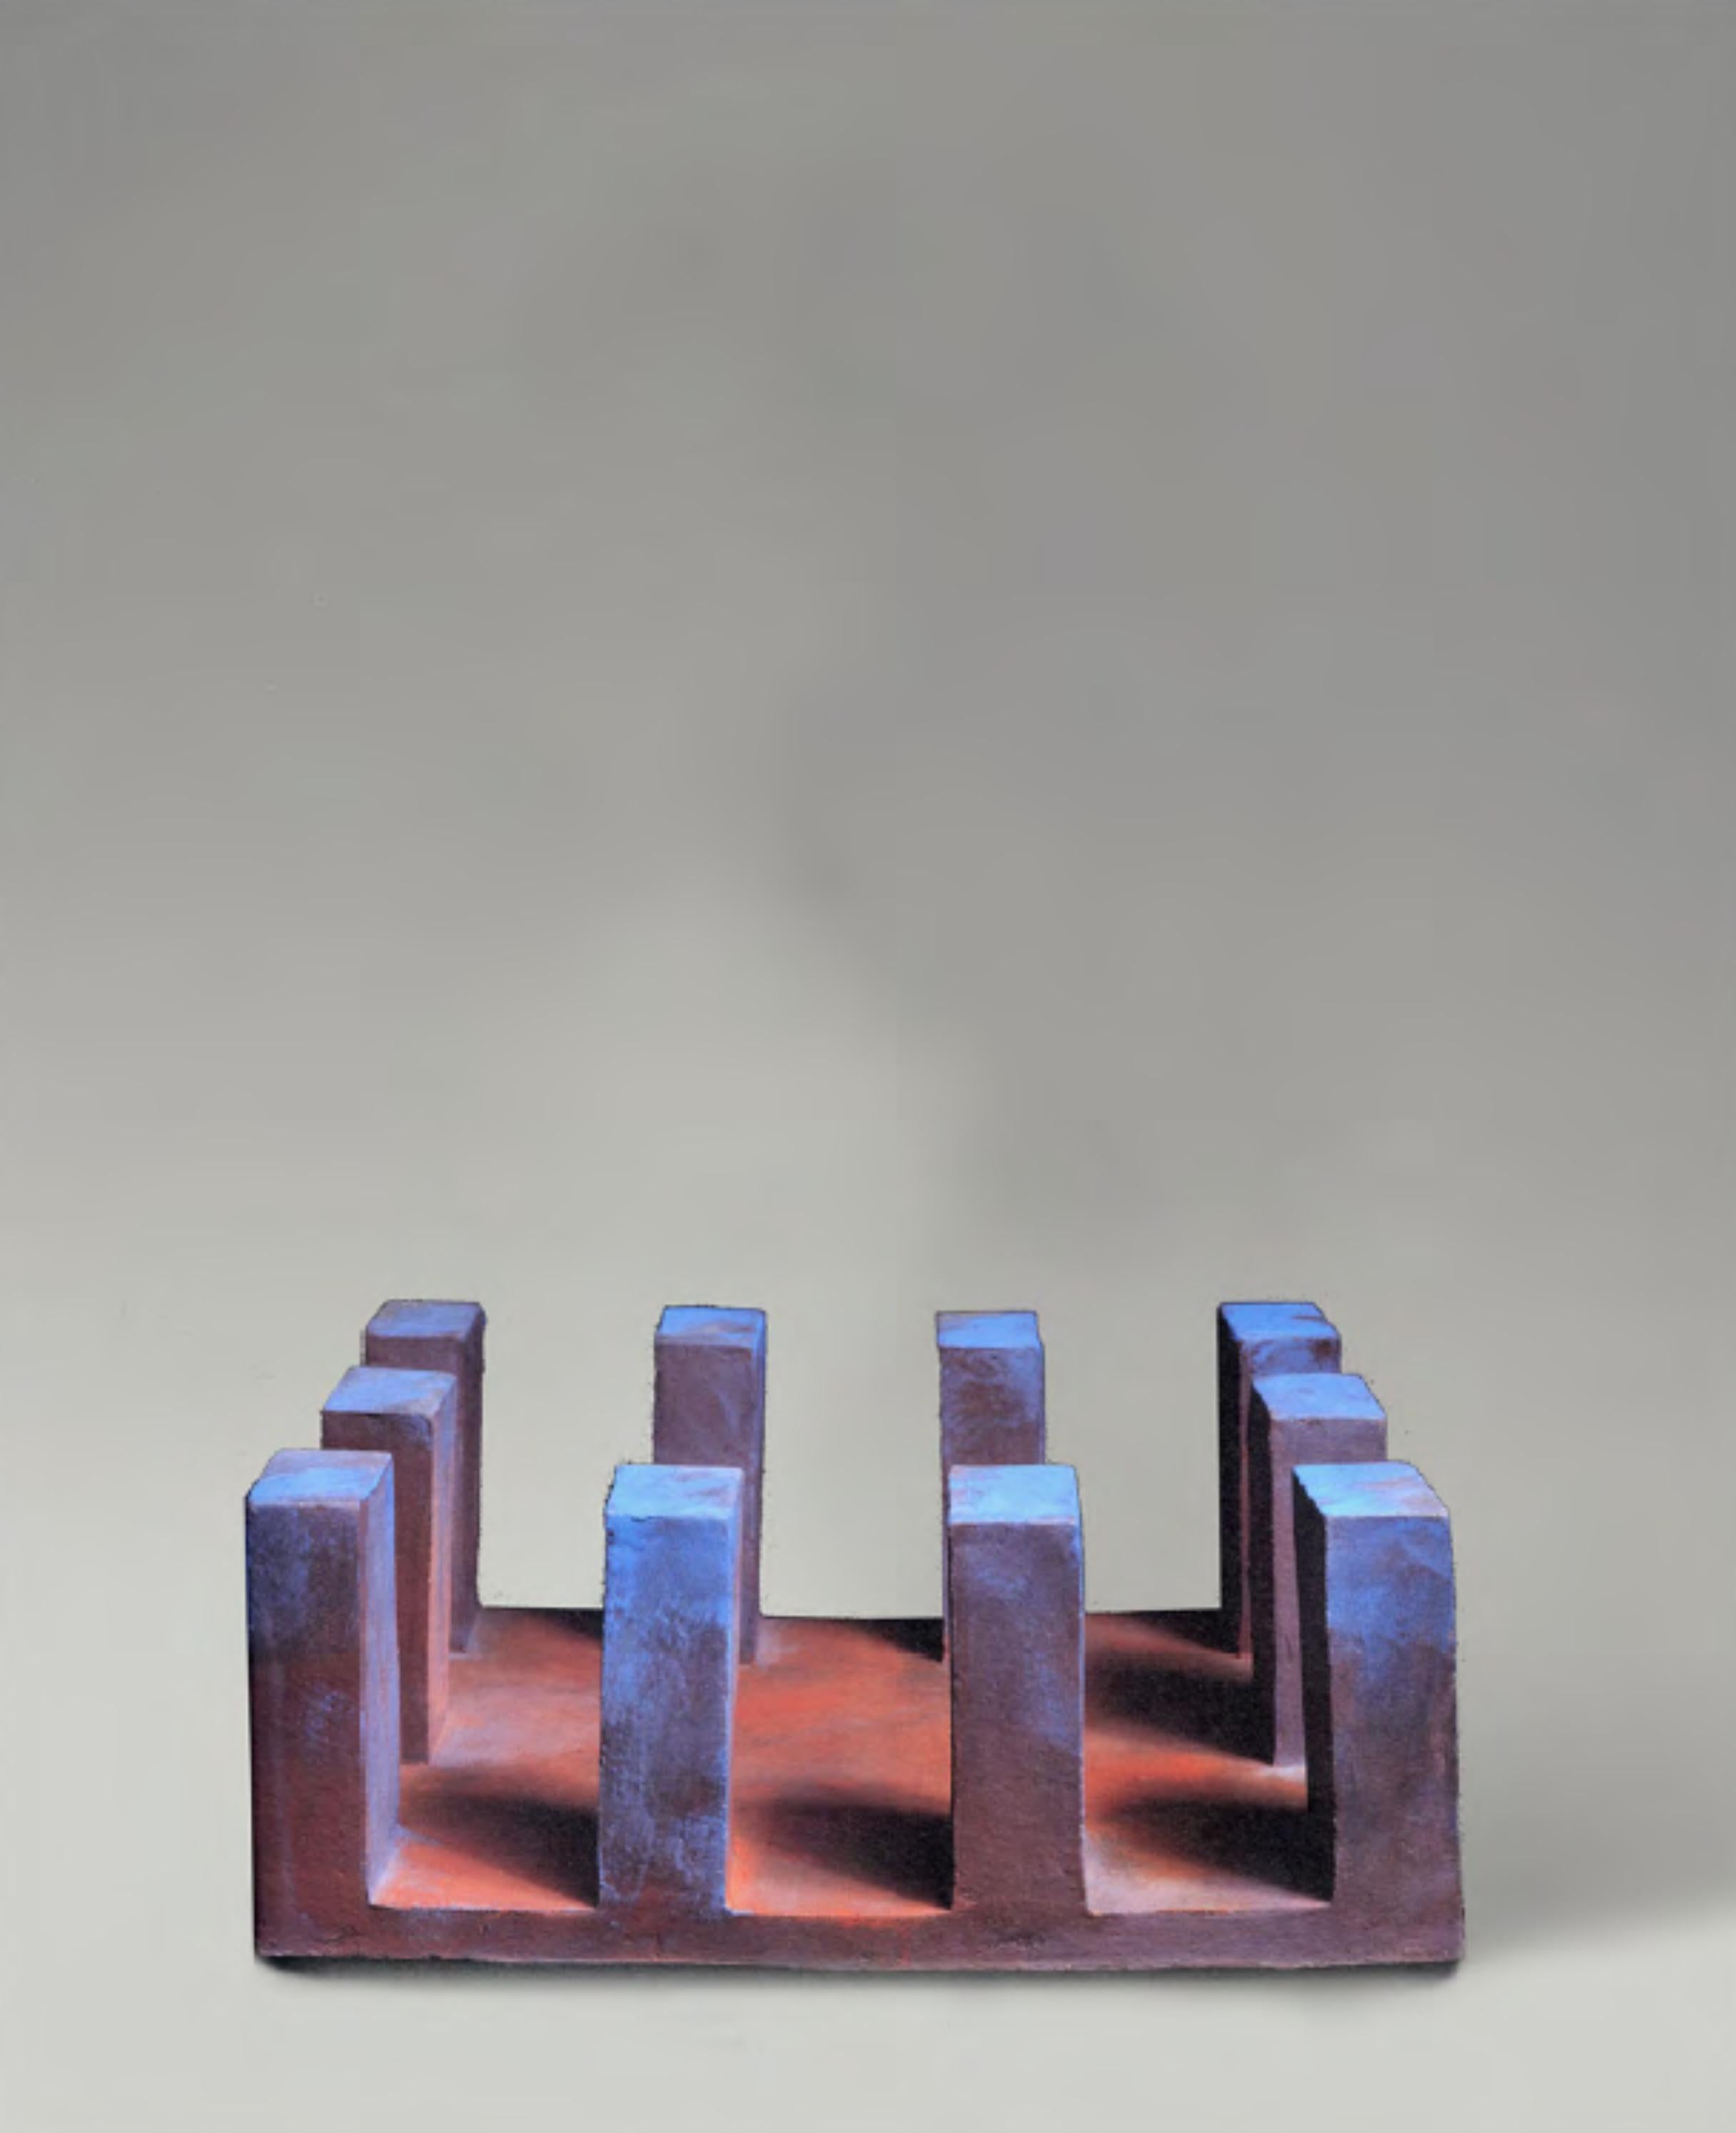 CF Te12 Terre von Caturegli Formica
Abmessungen: B 30 x T 30 H 14 cm
MATERIALIEN: Keramik

Terres, Dakar, Senegal, 1987-1991 

TERRES ist eine Serie von symbolischen Keramikskulpturen, die in Dakar, Senegal, im Atelier 